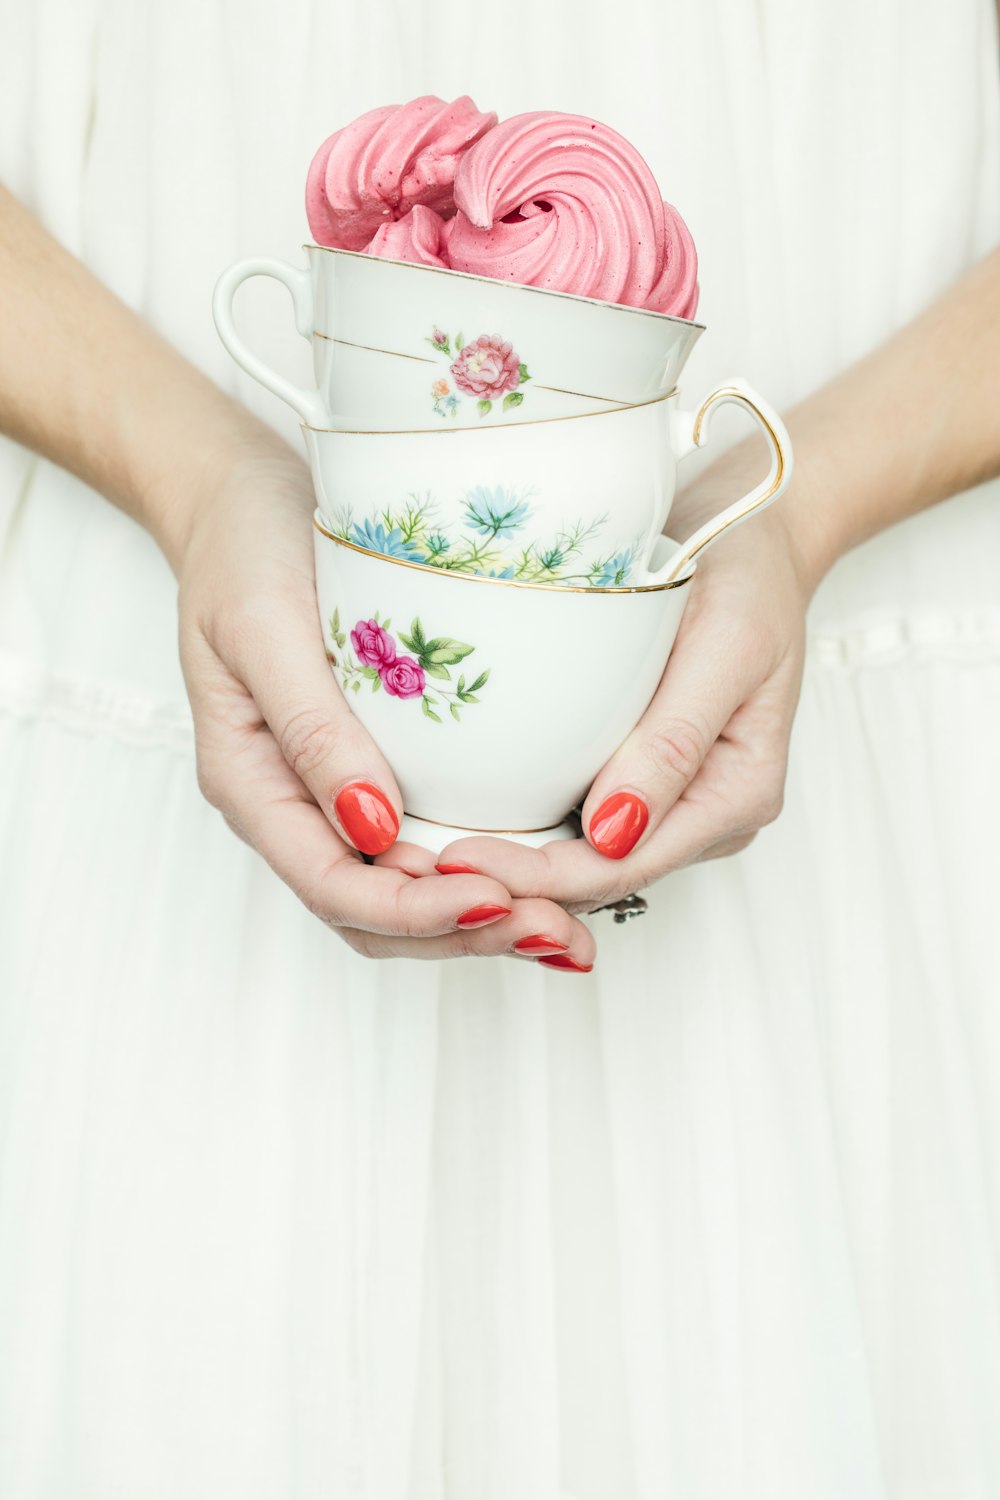 Persona che tiene tre tazze da tè in ceramica floreale